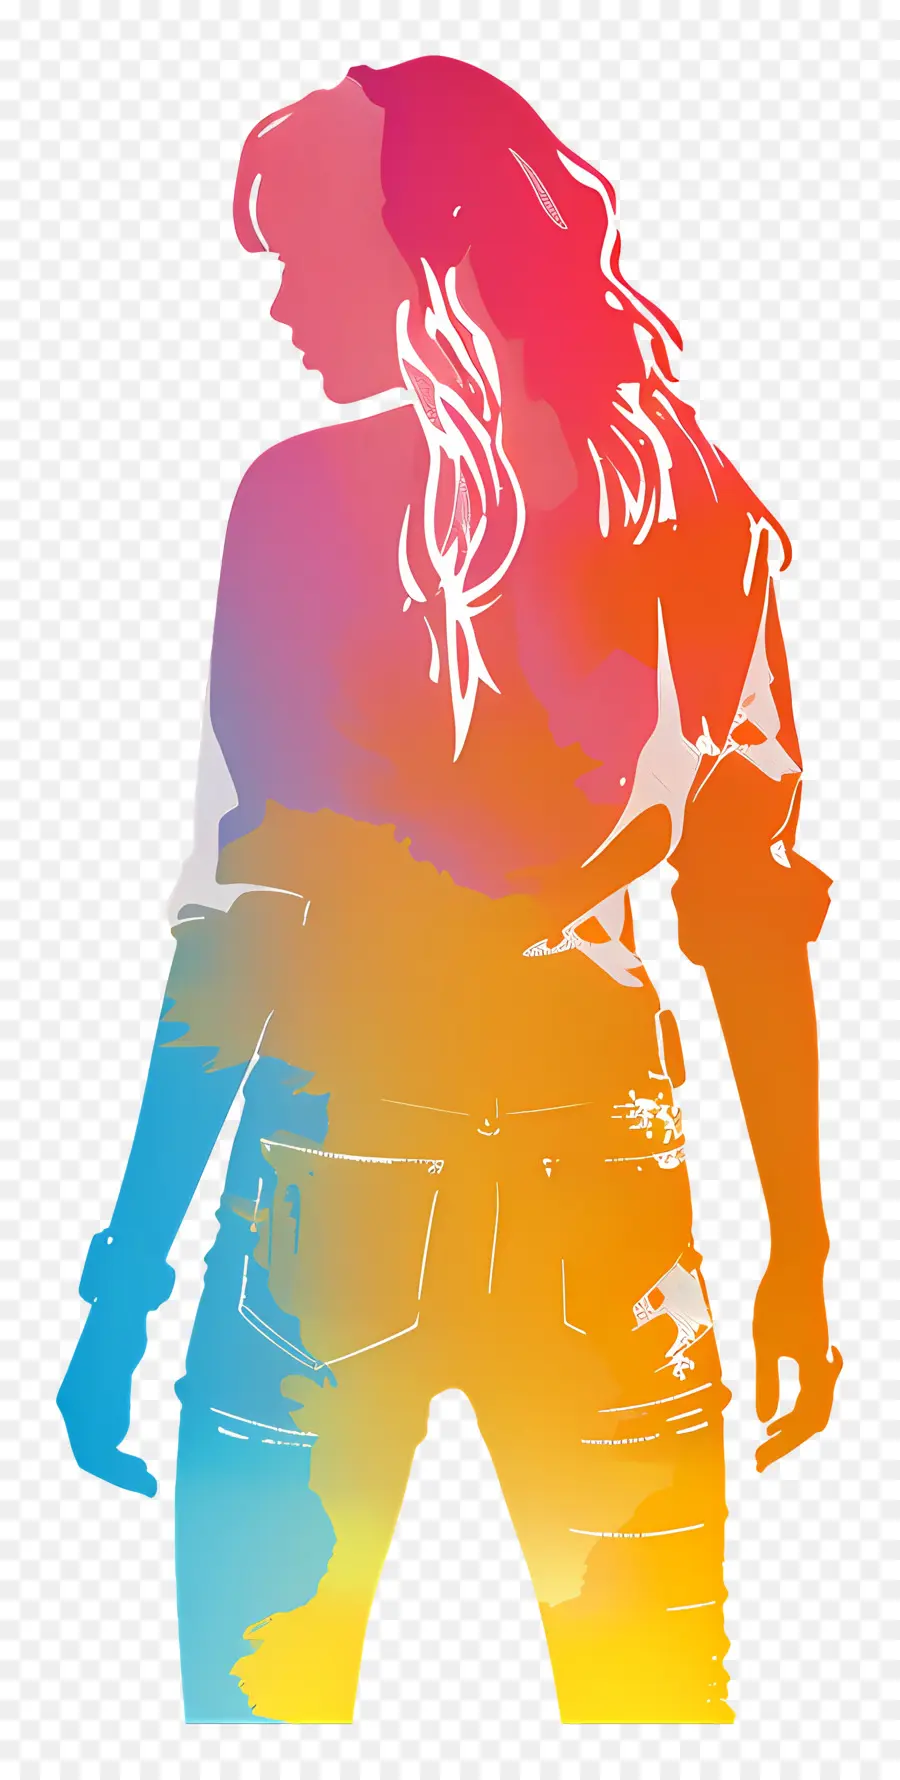 Decal Taylor Swift Silhouette Digital Art Woman Silhouette Màu sắc rực rỡ - Hình bóng hồ sơ rực rỡ với màu neon